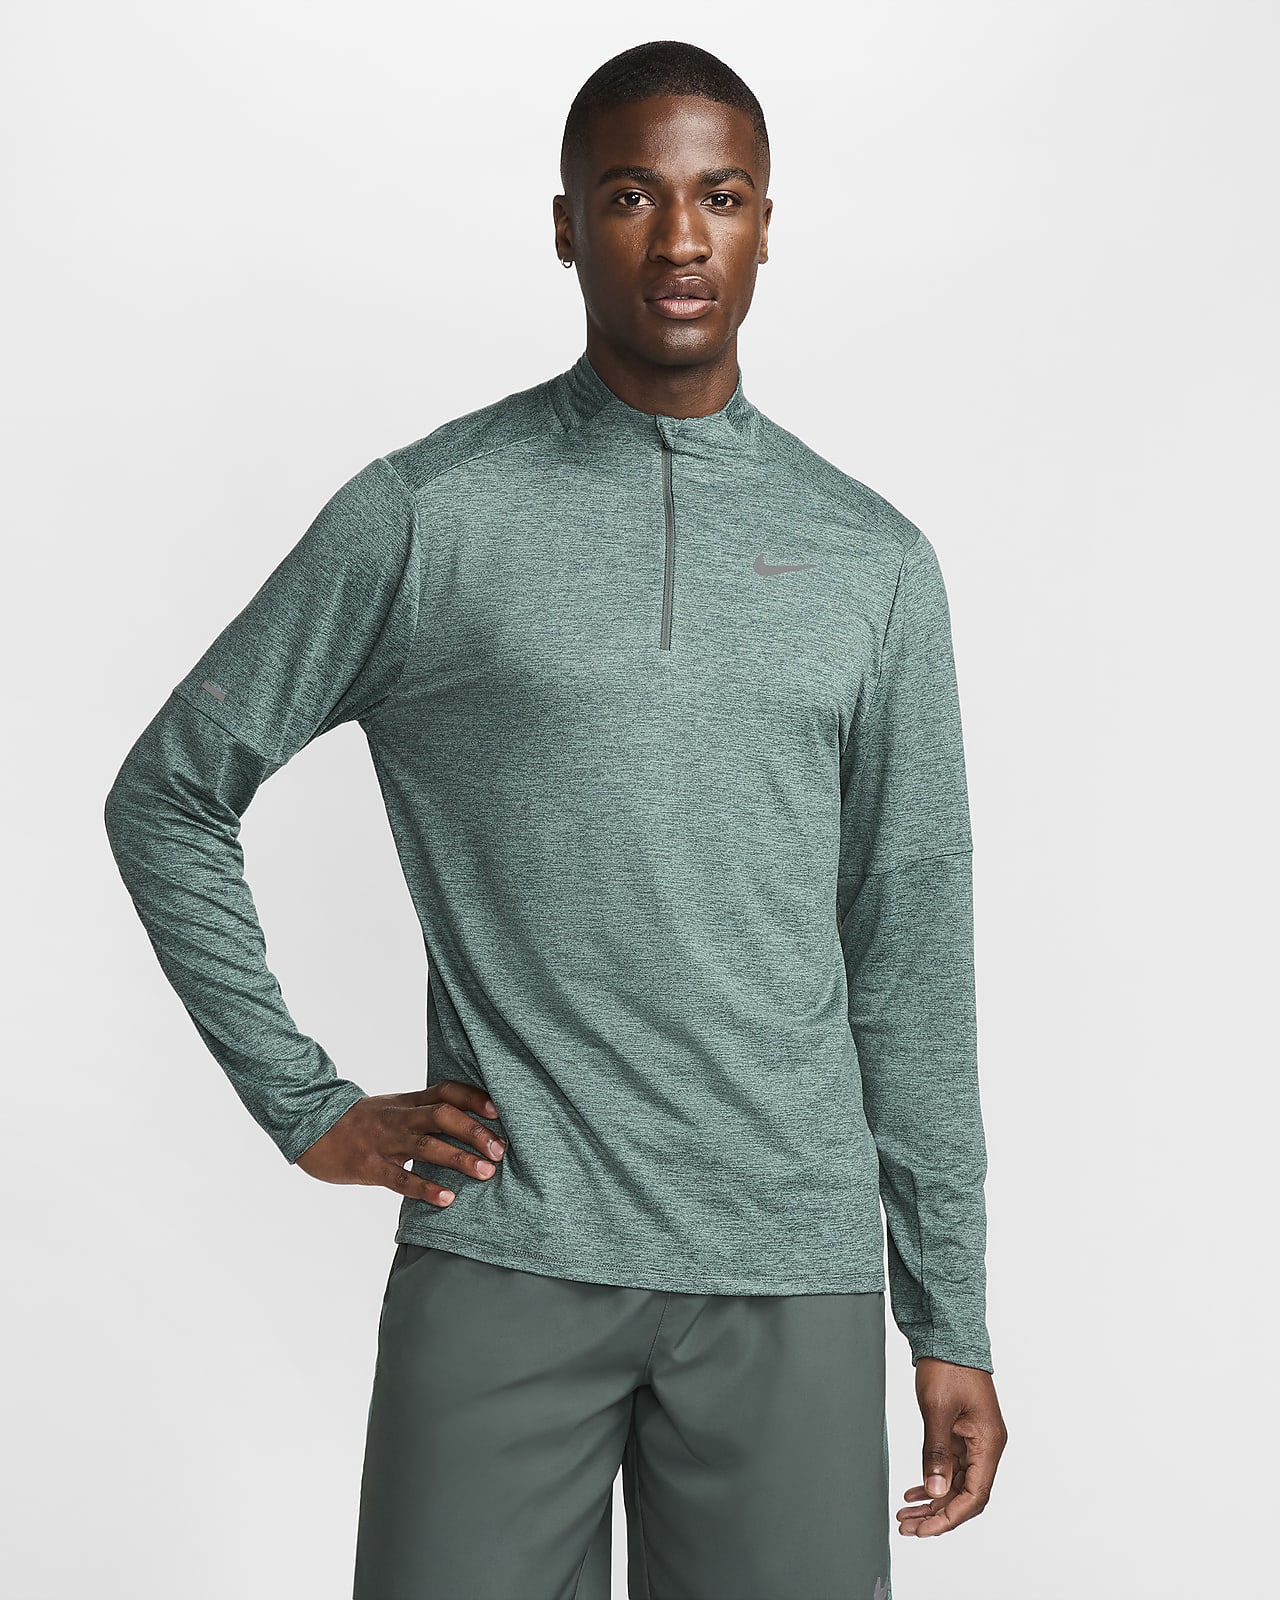 Haut de running à demi-zip Dri-FIT Nike pour homme